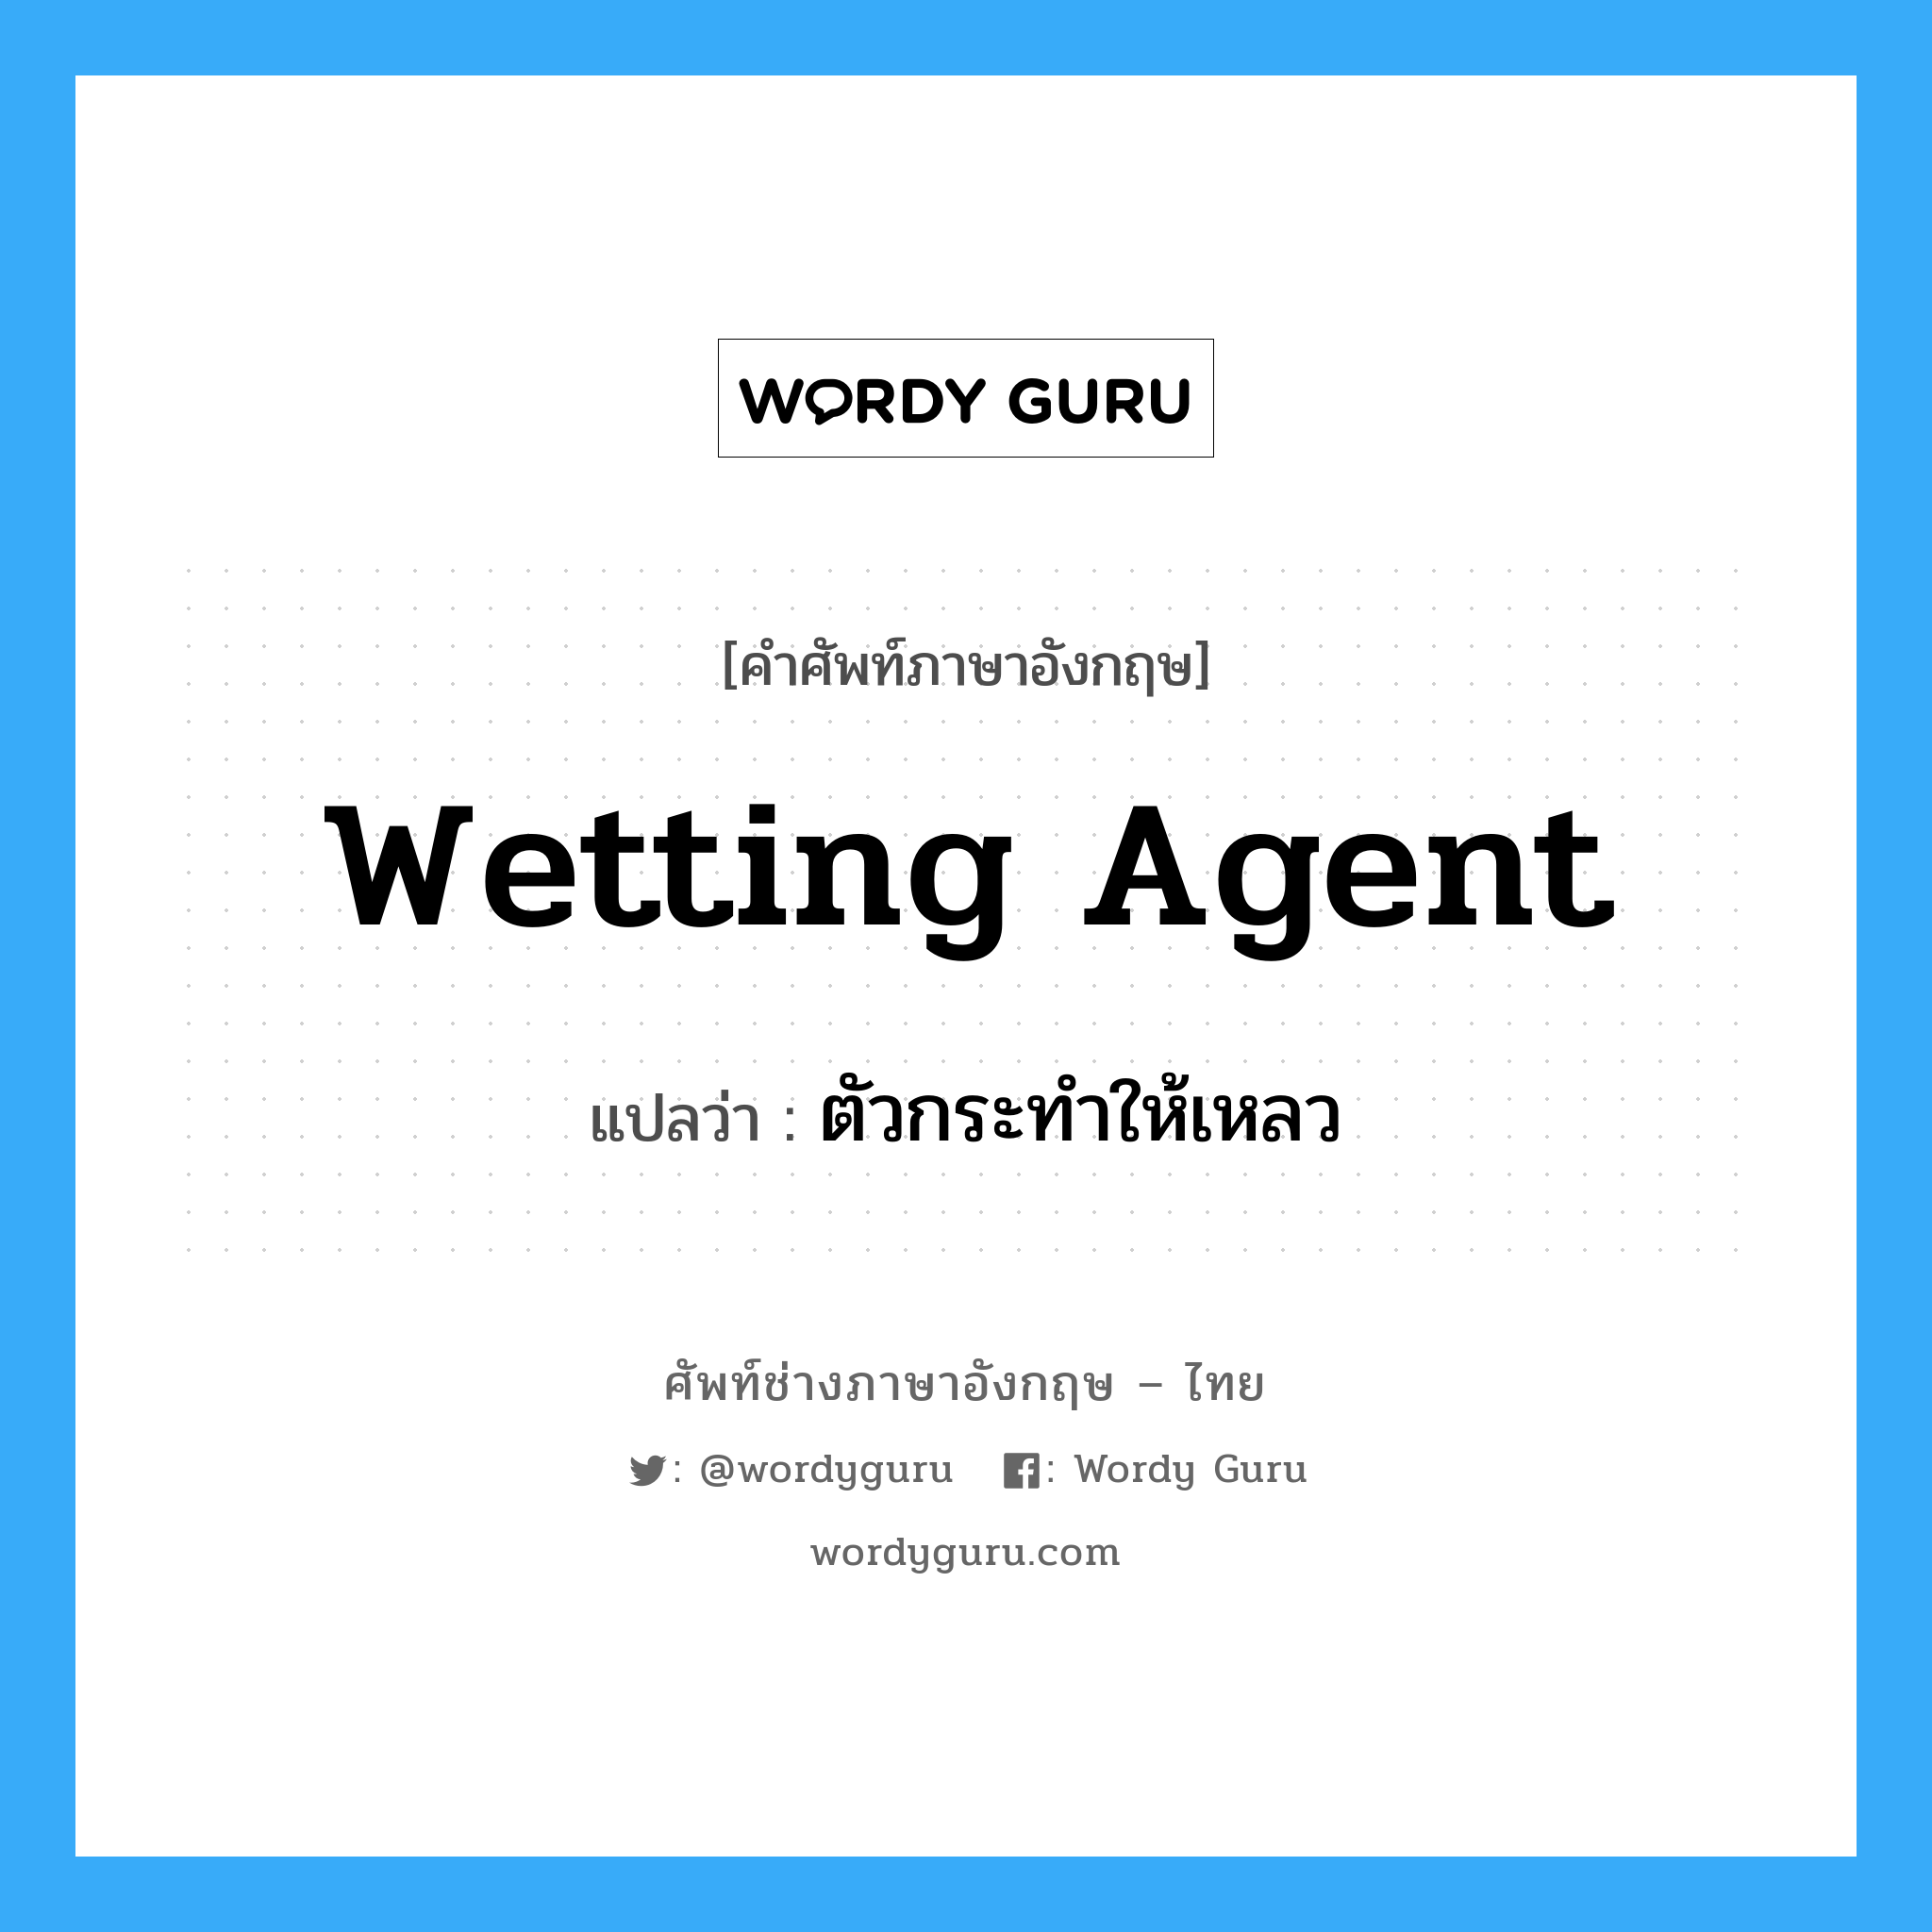 wetting agent แปลว่า?, คำศัพท์ช่างภาษาอังกฤษ - ไทย wetting agent คำศัพท์ภาษาอังกฤษ wetting agent แปลว่า ตัวกระทำให้เหลว